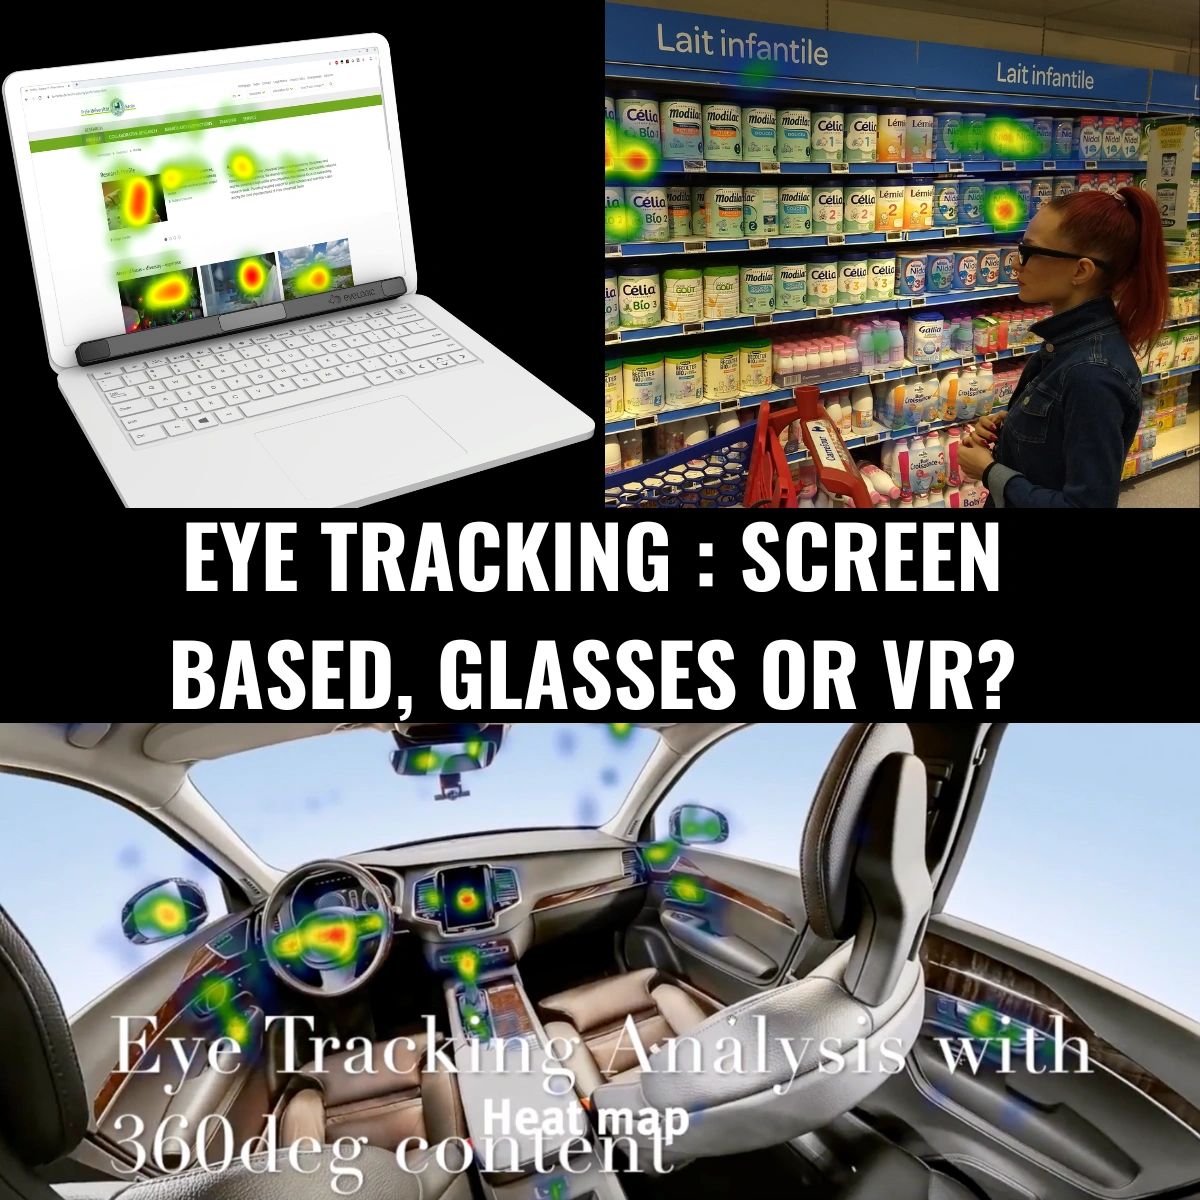 Tobii eye trackers (screen-based)